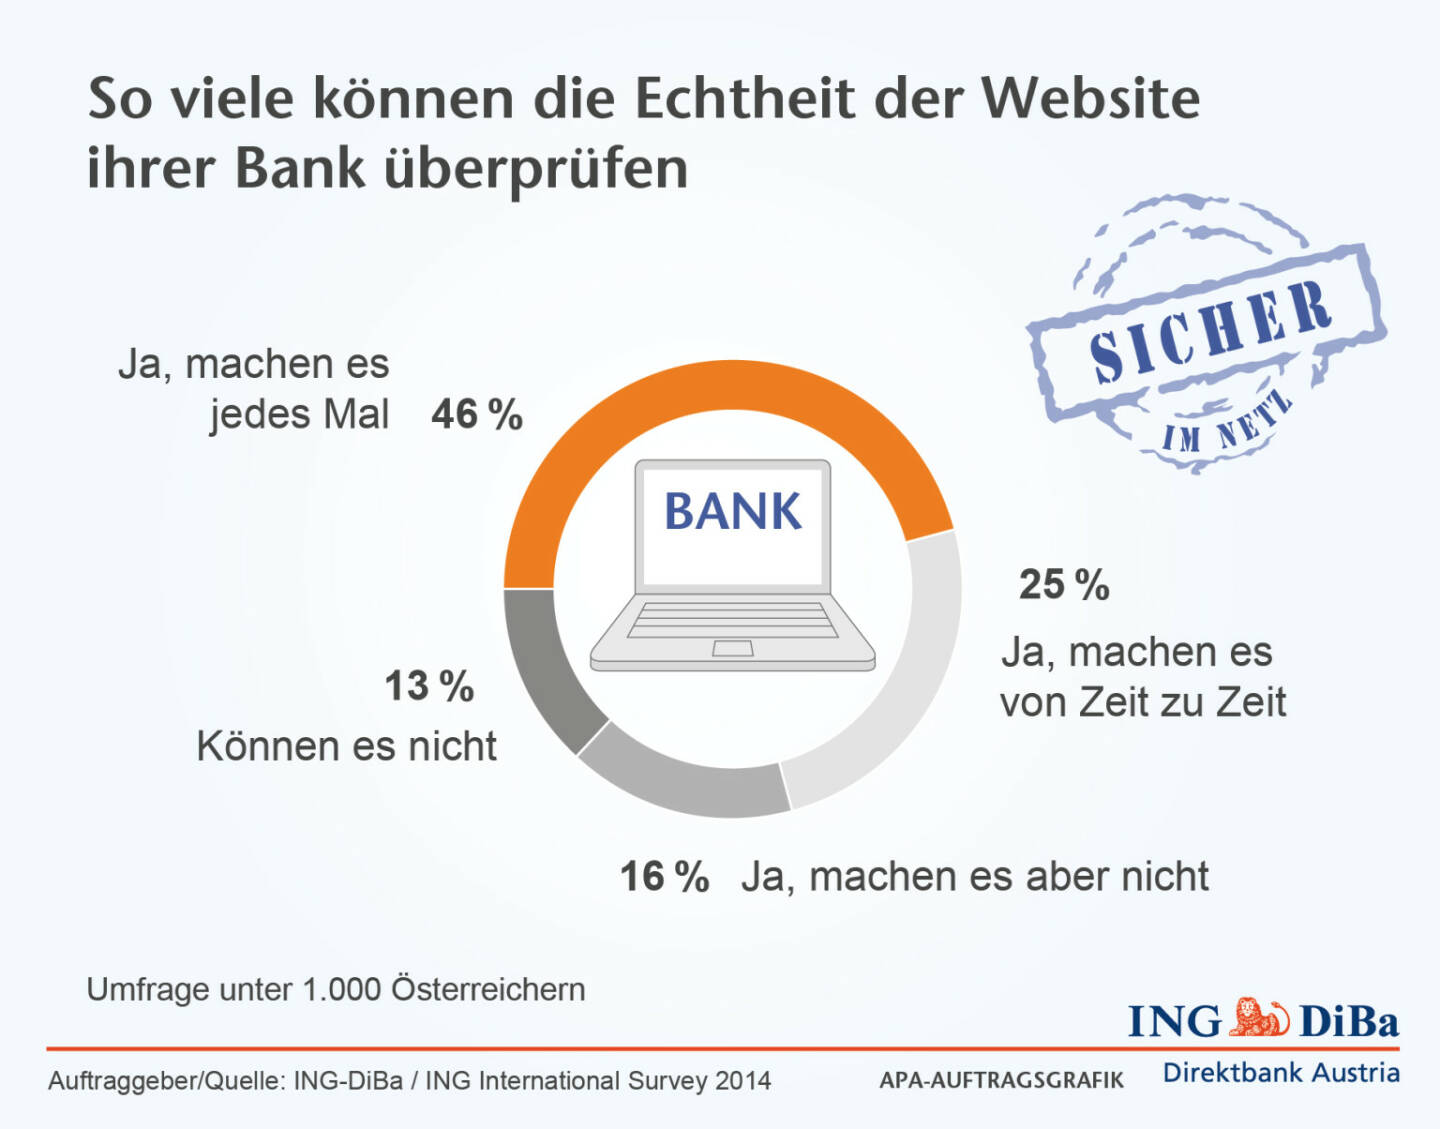 ING-DiBa: 46% der Österreicher prüfen bei jedem Online-Banking die Echtheit der Website ihrer Bank. Aber leider sind auch ganze 13% dazu gar nicht in der Lage